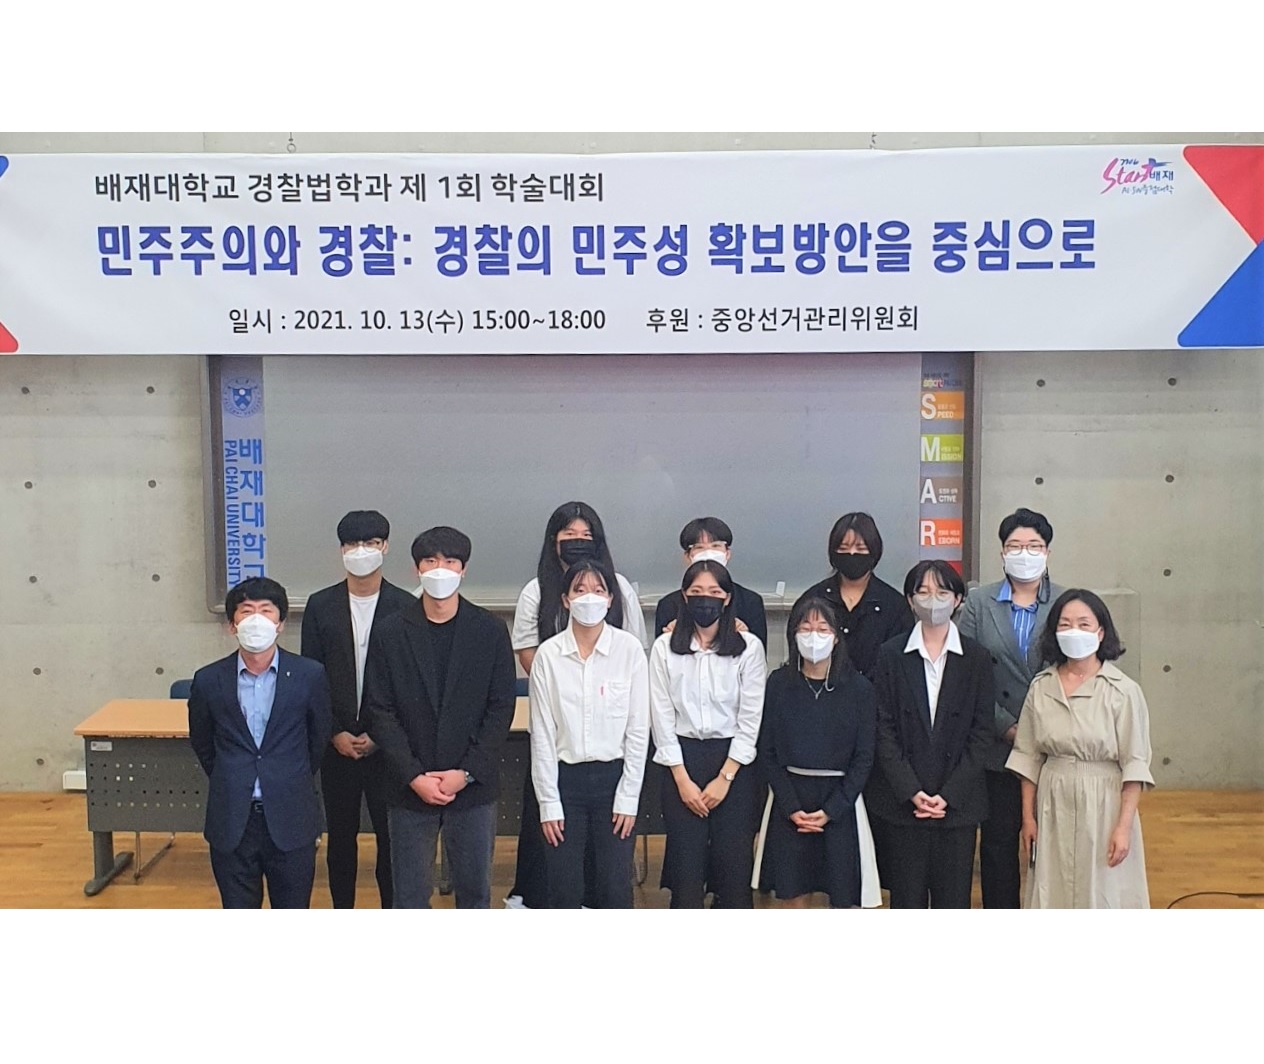 배재대 경찰법학과 ‘민주주의와 경찰’ 주제로 학생 참여형 학술대회 개최